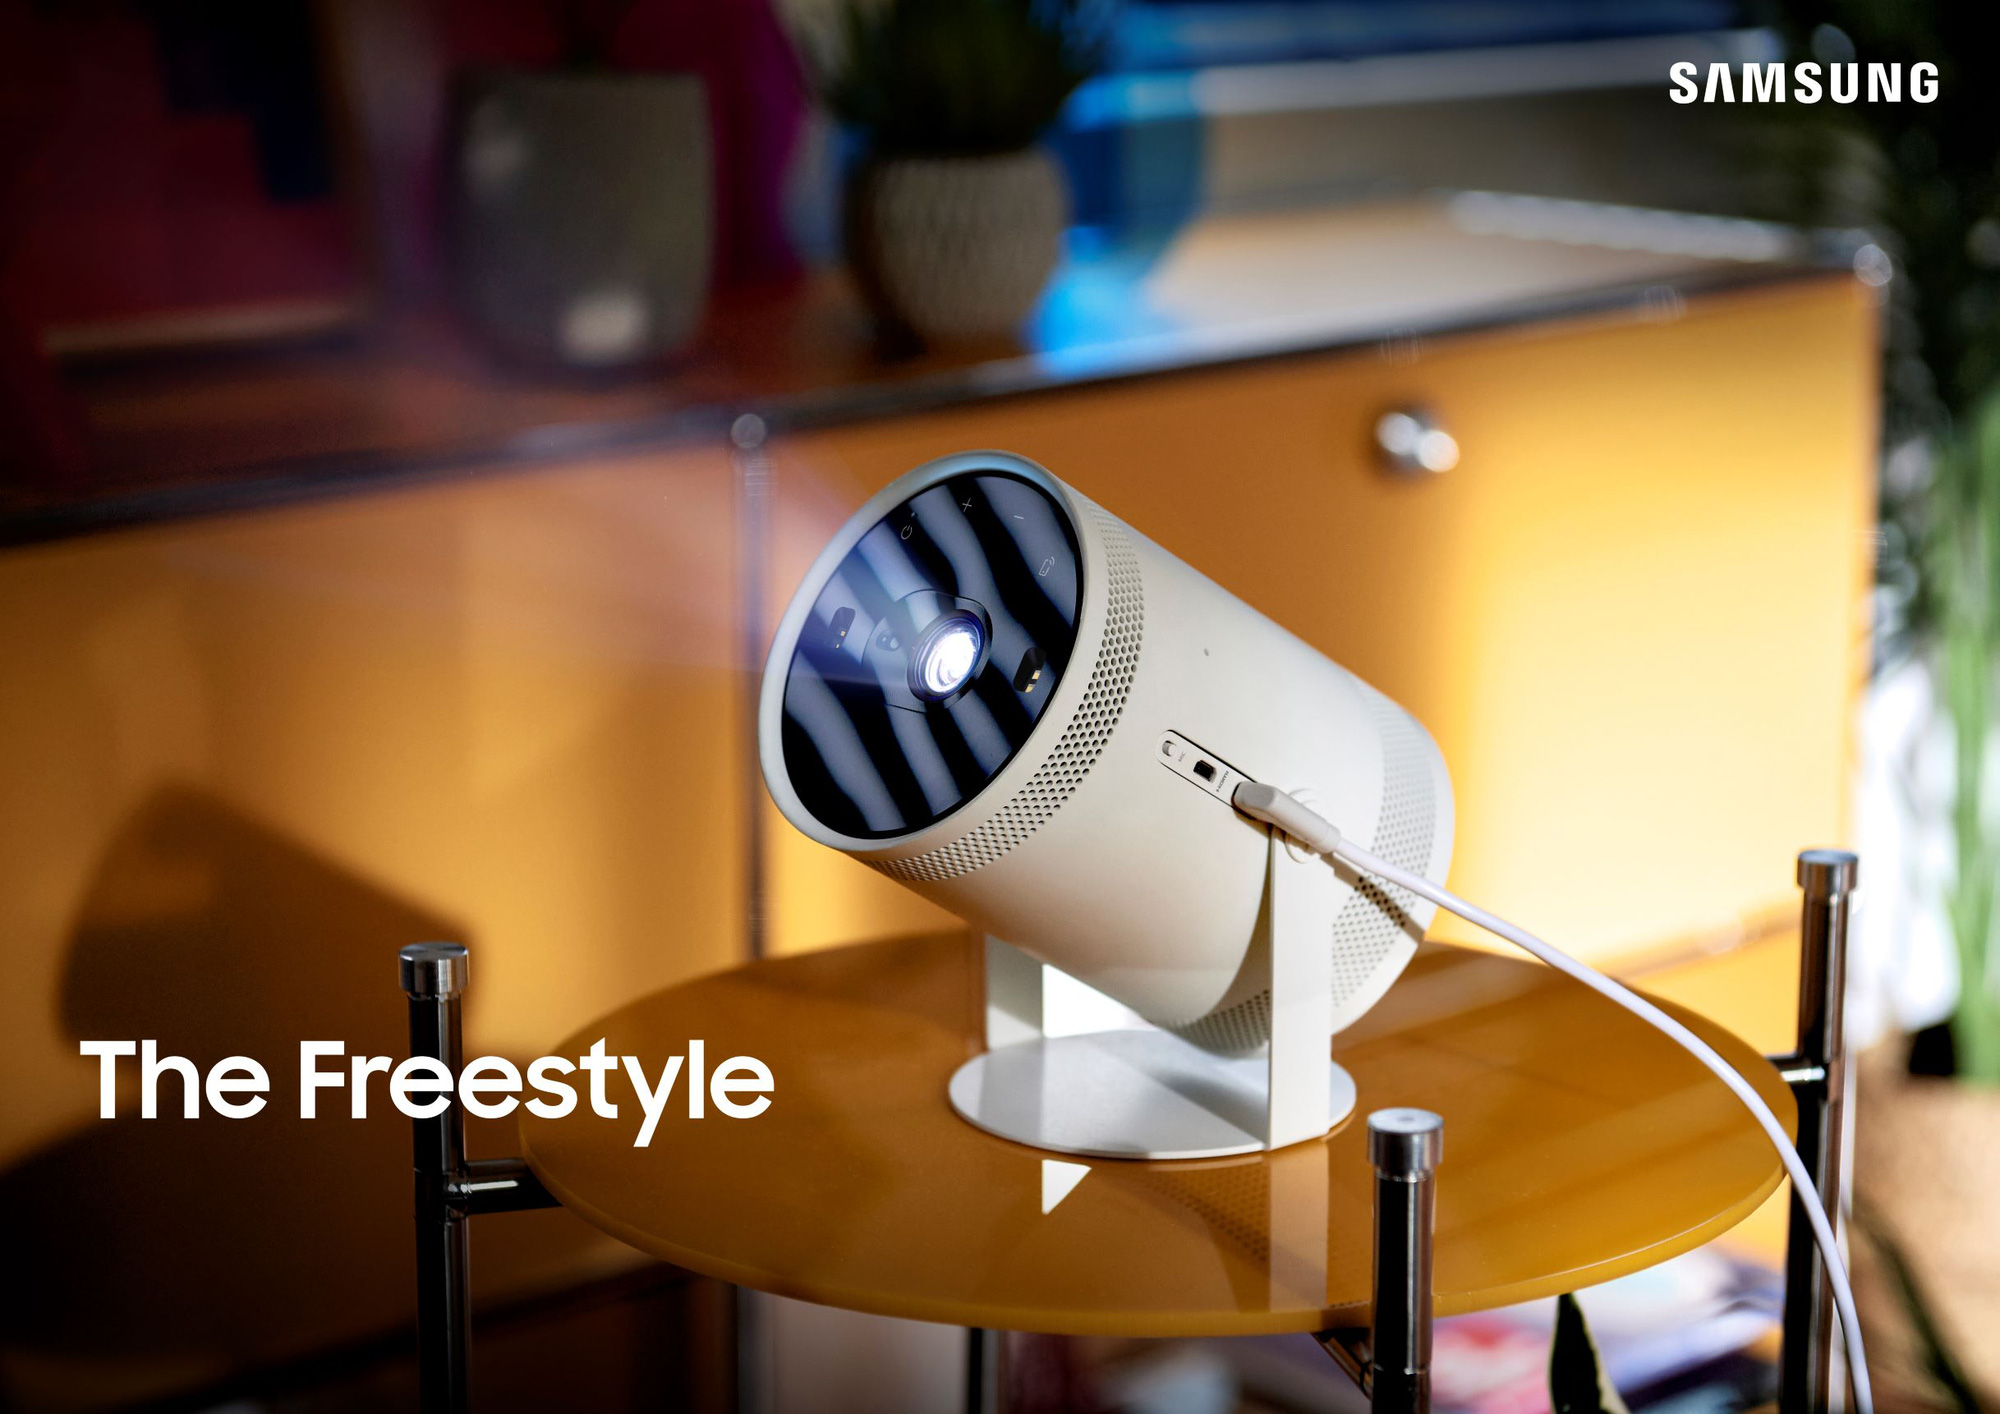 Máy chiếu Samsung Freestyle mở bán hôm nay: Chiếc TV bỏ túi đúng nghĩa, hình ảnh sáng đẹp, linh hoạt bất ngờ - Ảnh 1.